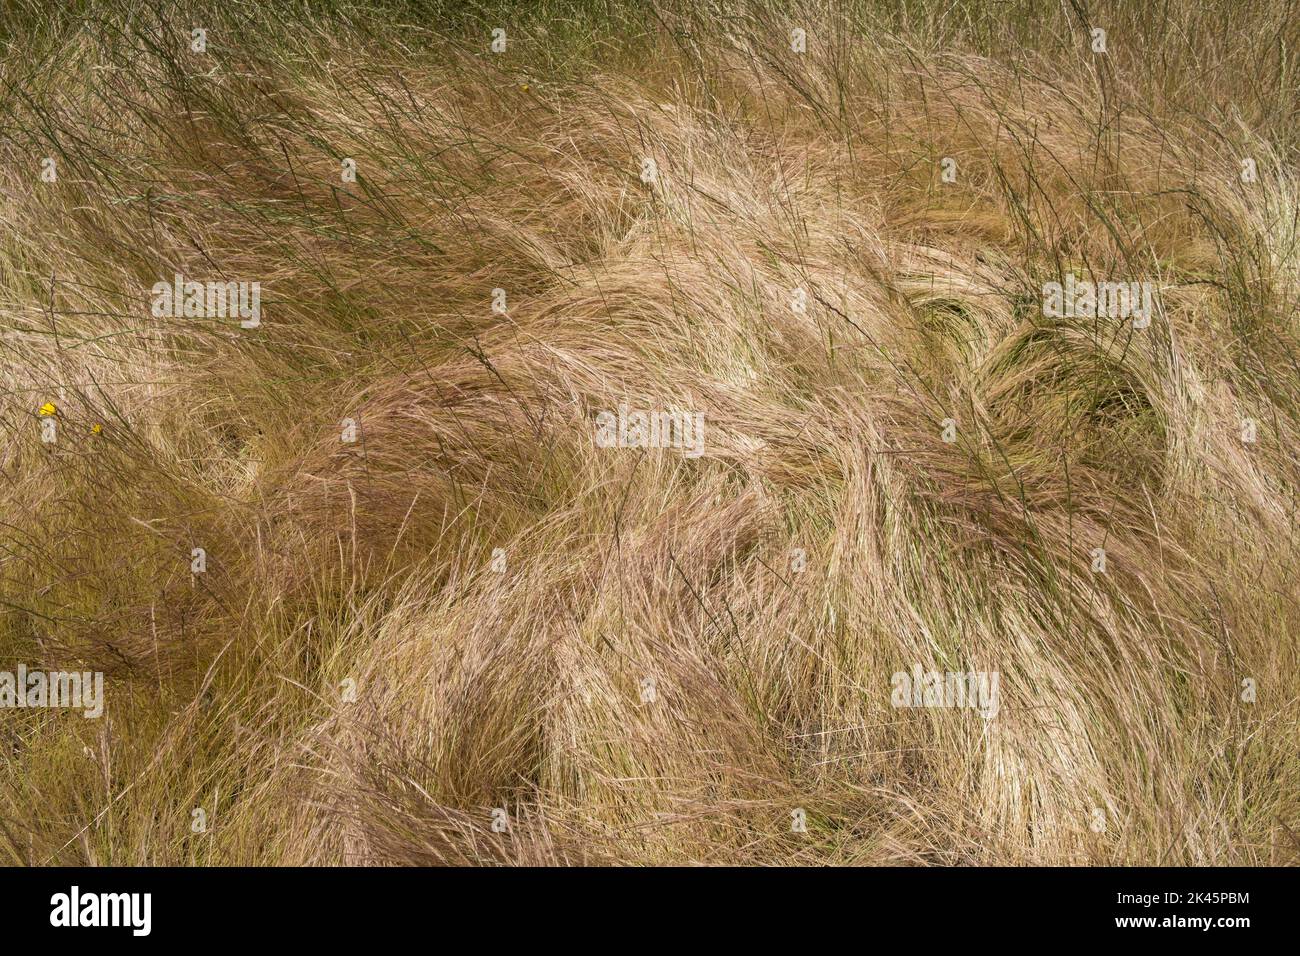 Campo de pastos salvajes azotados por el viento en verano, primer plano de hierba larga, vista aérea. Foto de stock